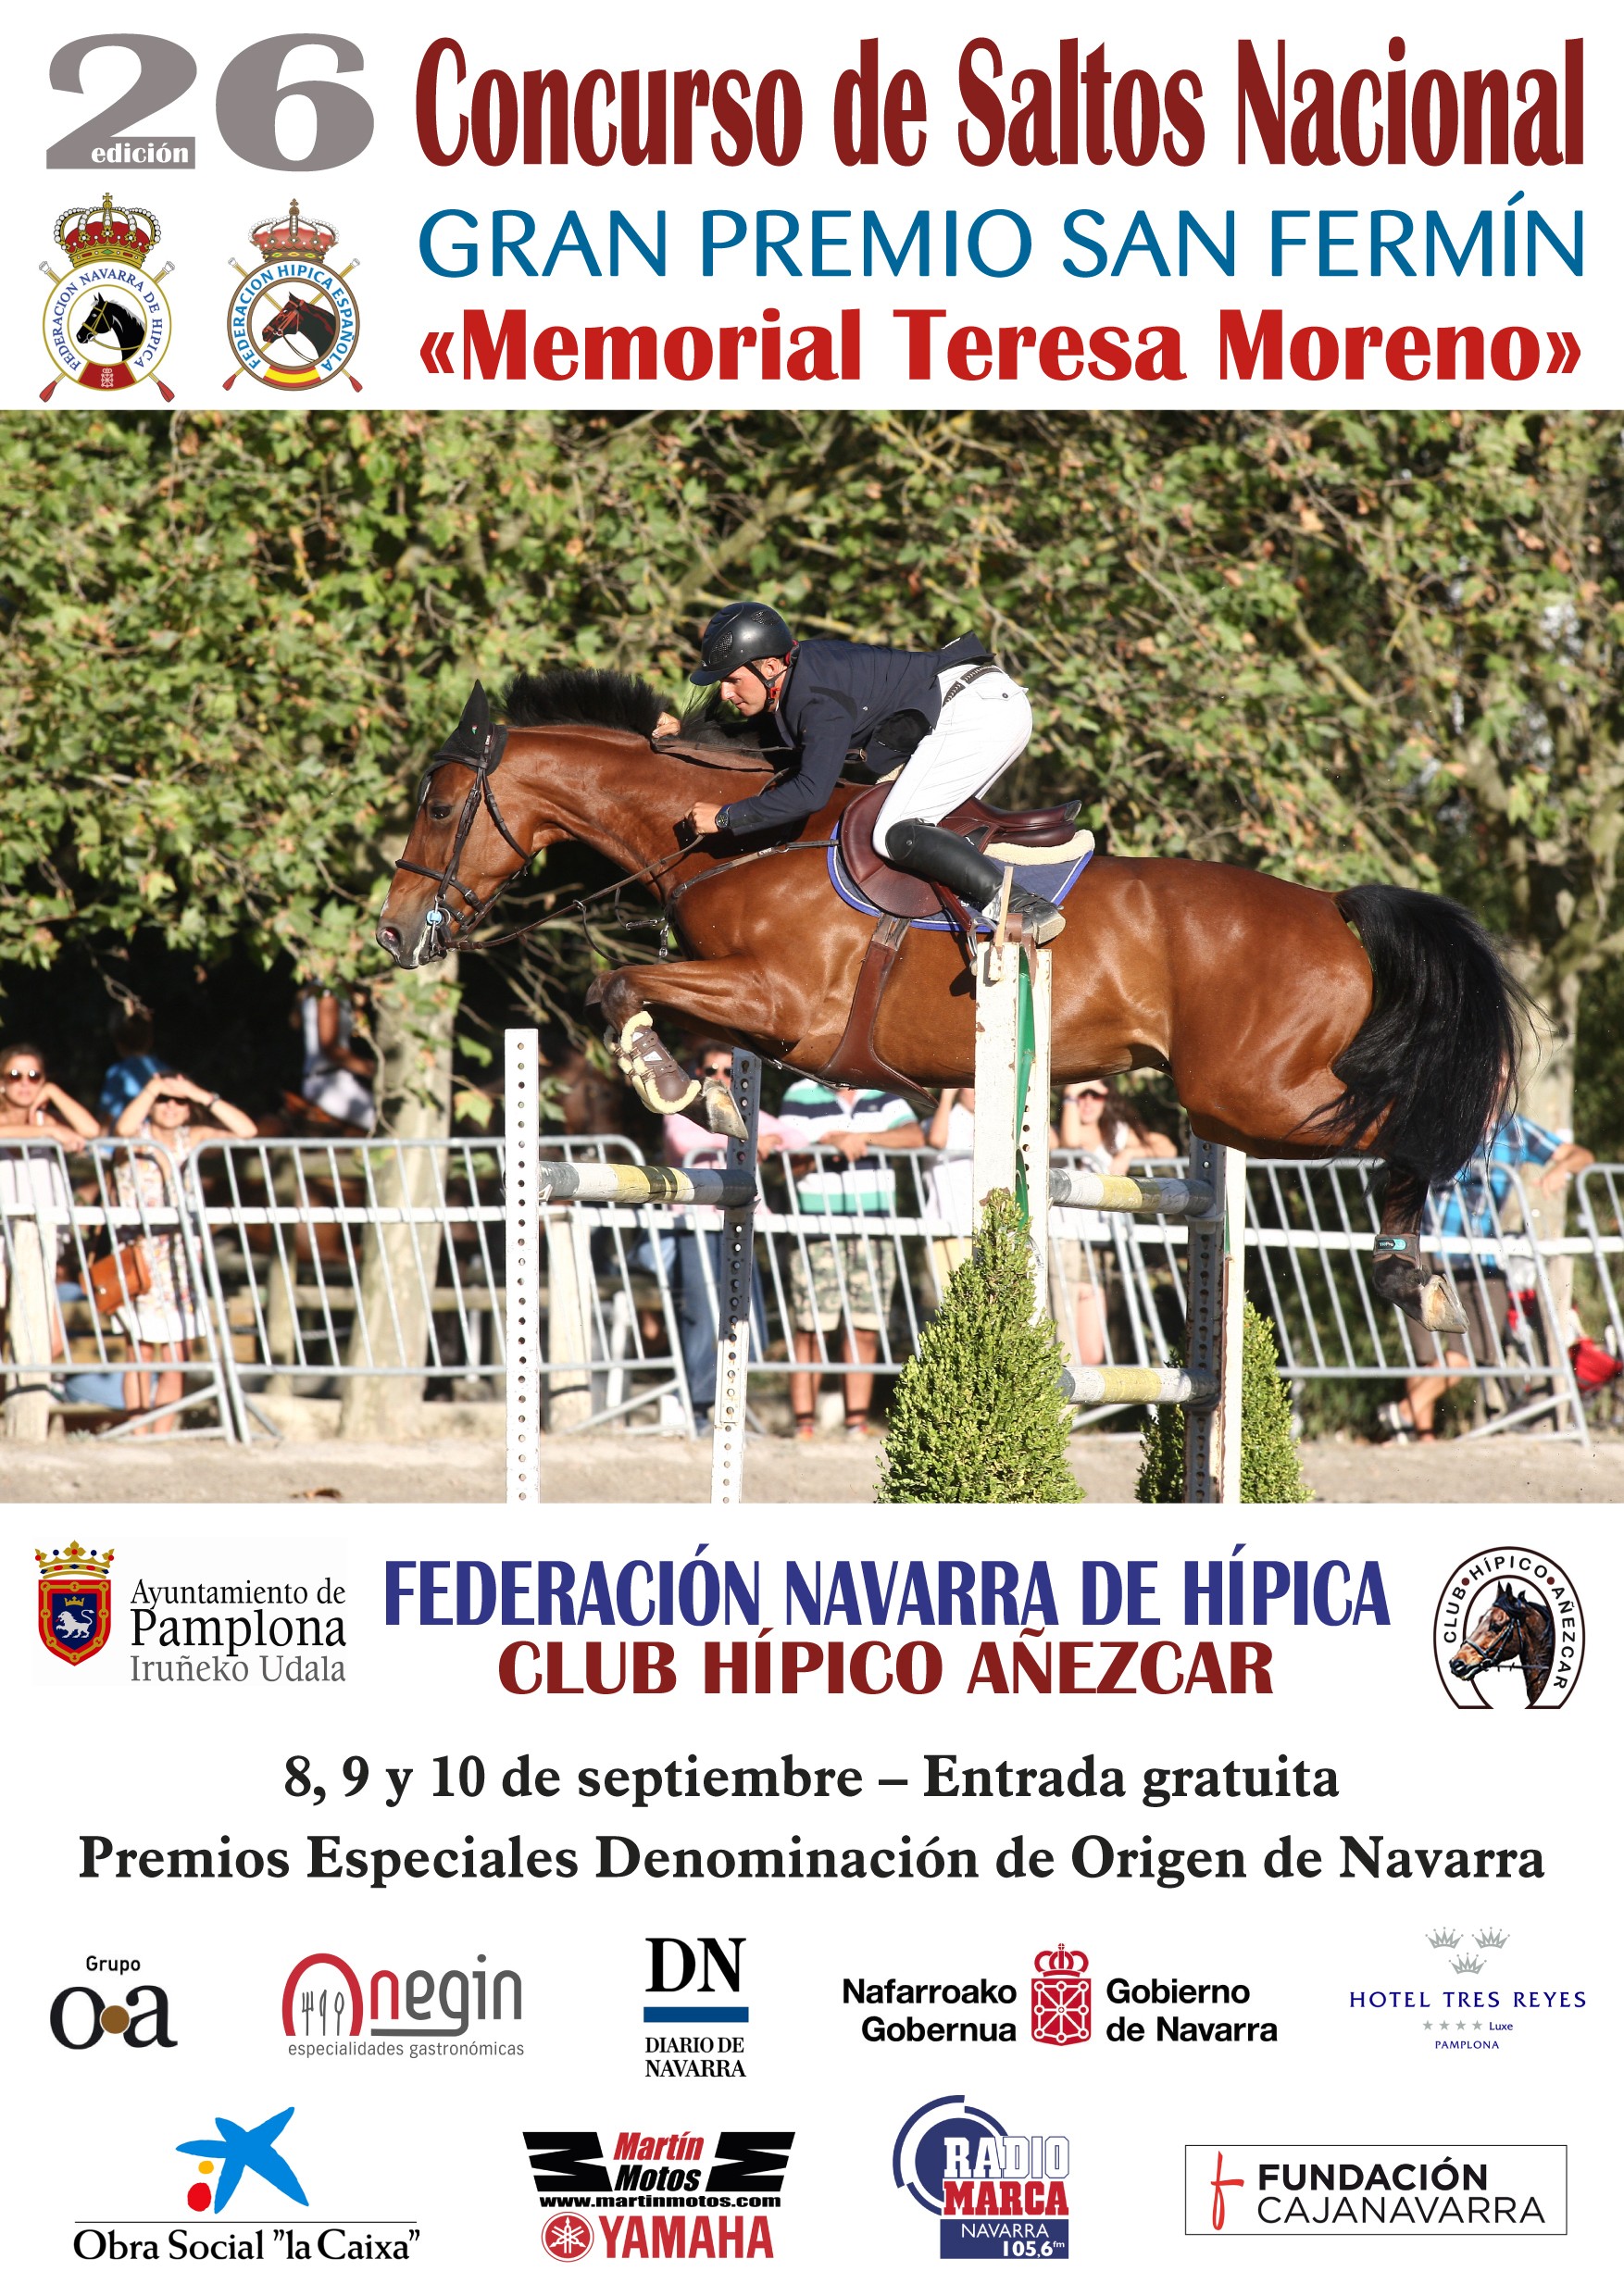 26 Edición Concurso Nacional de Saltos Gran Premio San Fermín Memorial Teresa Moreno